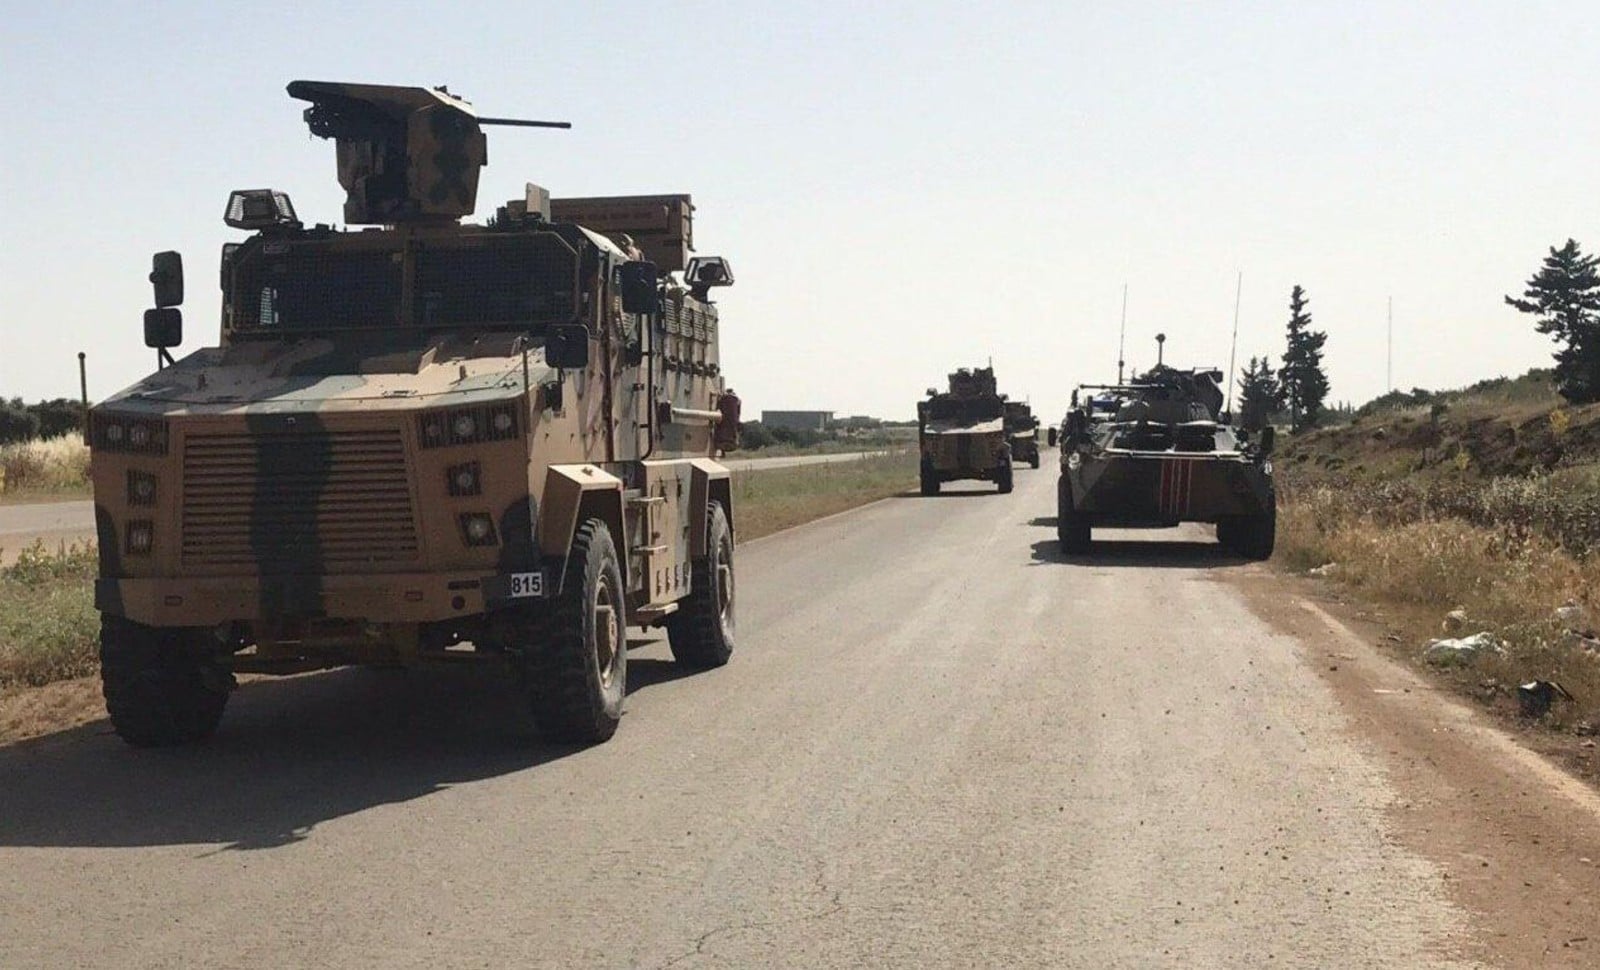 Patrouille turque et russe sur l'autoroute M4 dans le nord de la Syrie.
00963157_000002
Photo : SIPA